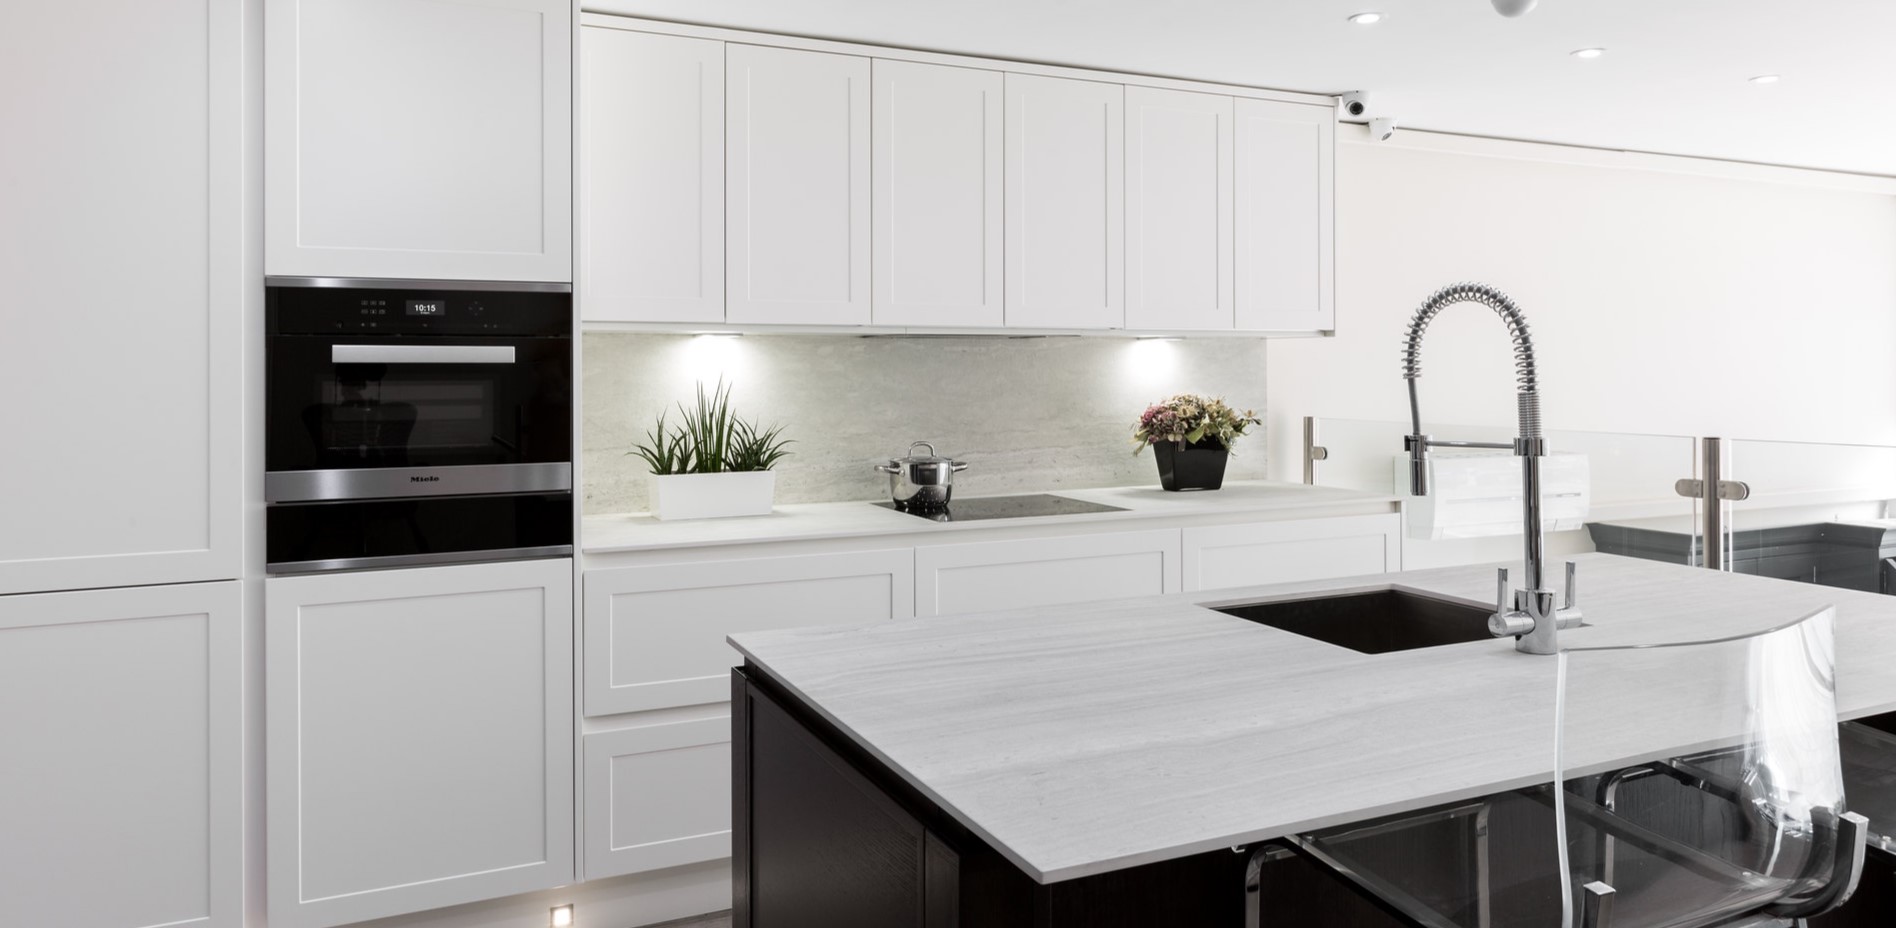 Кухонный гарнитур до потолка позволит хранить большое количество посуды и других кухонных принадлежностей